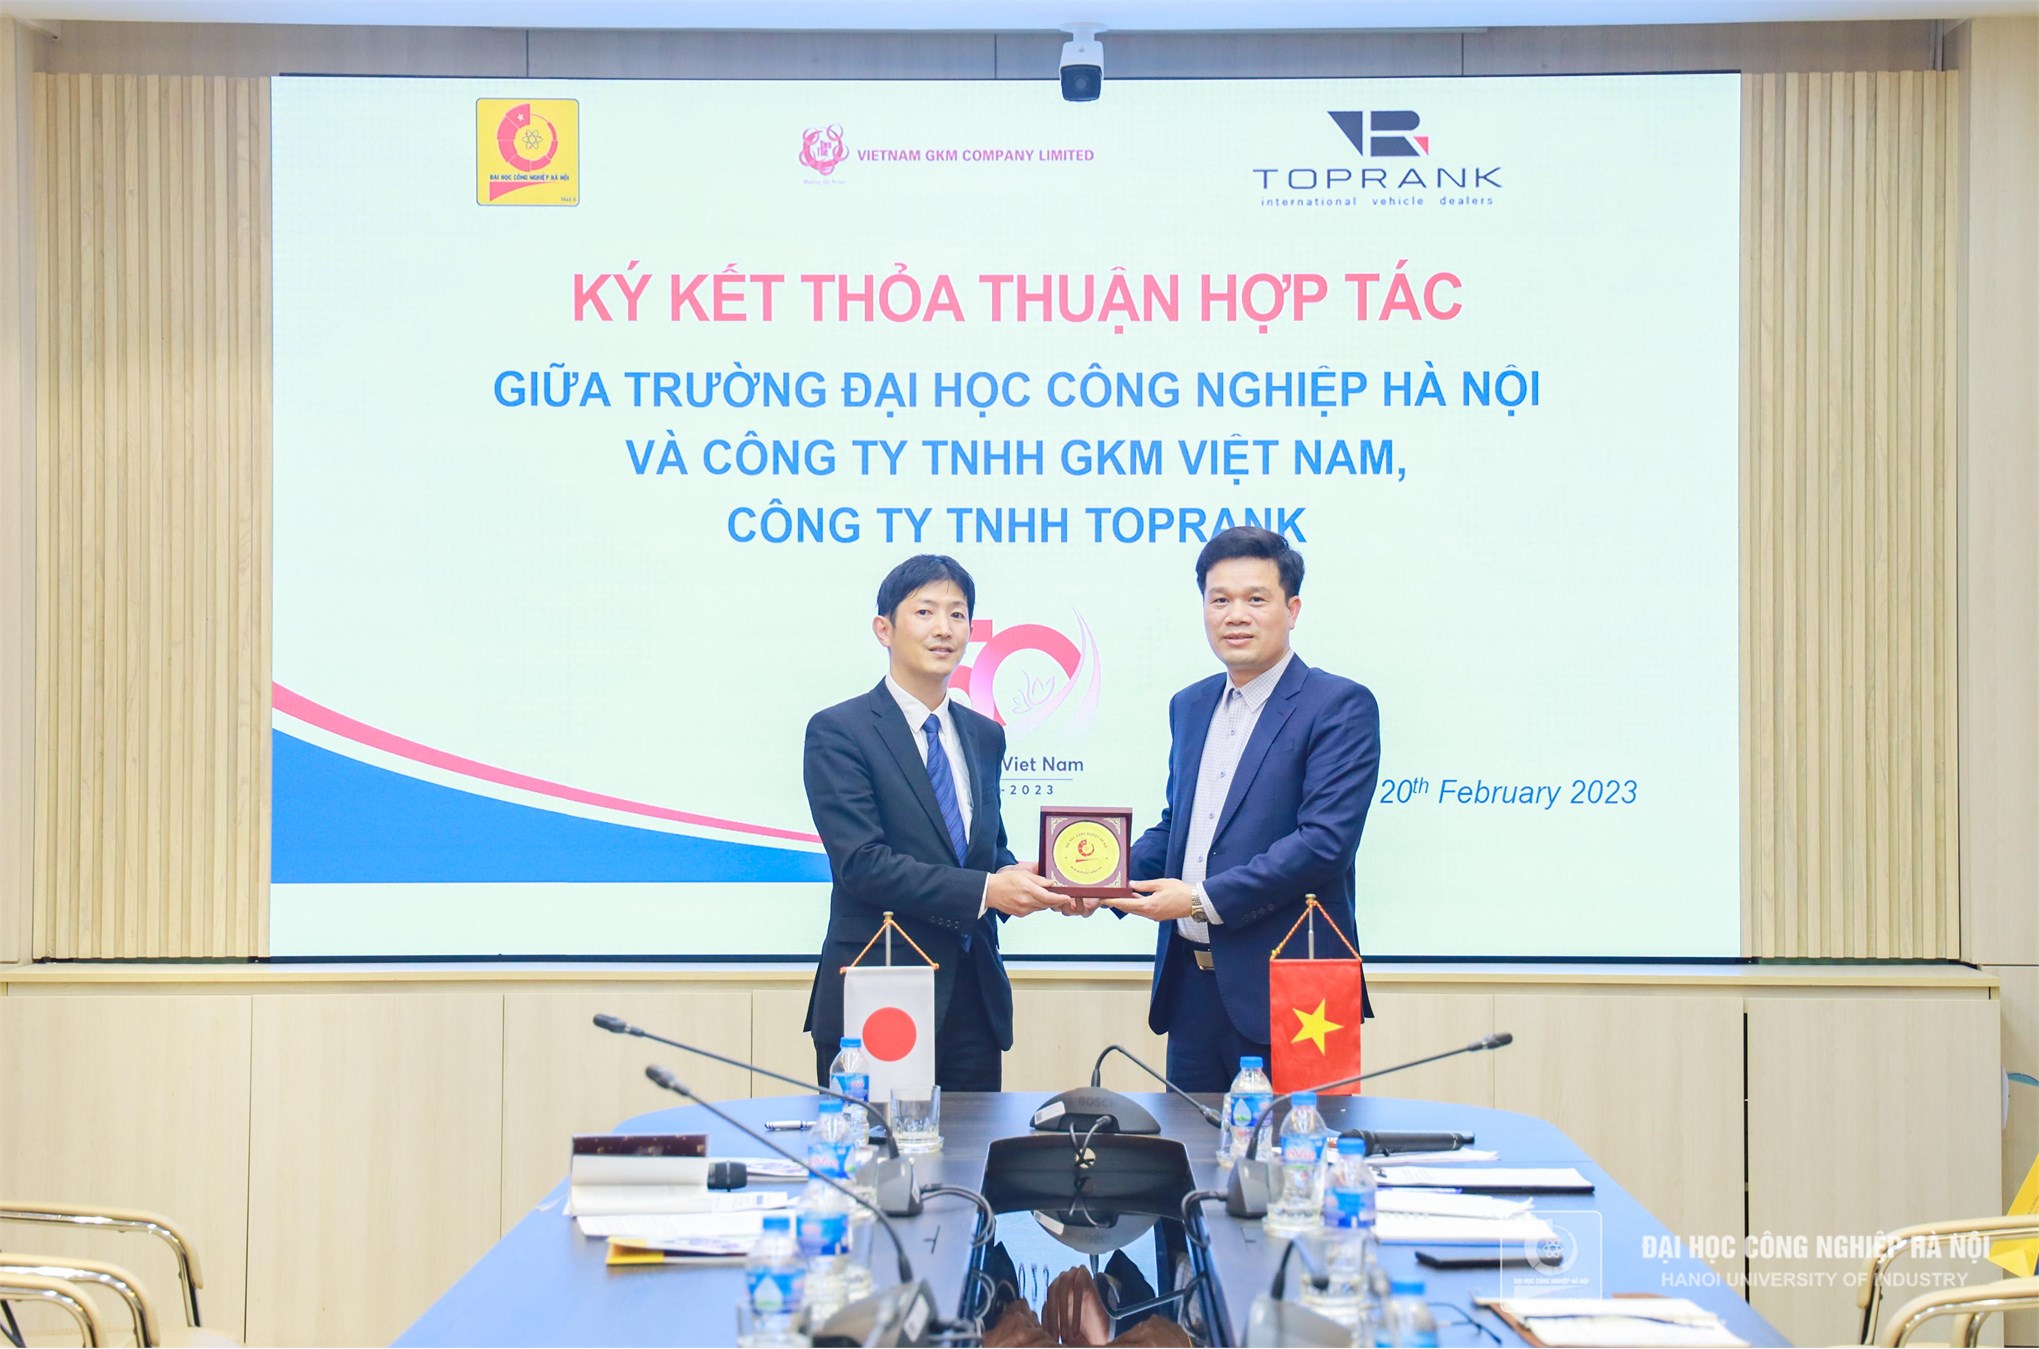 Phát triển nguồn nhân lực ngành dịch vụ sửa chữa bảo dưỡng ô tô tại Việt Nam và Nhật Bản